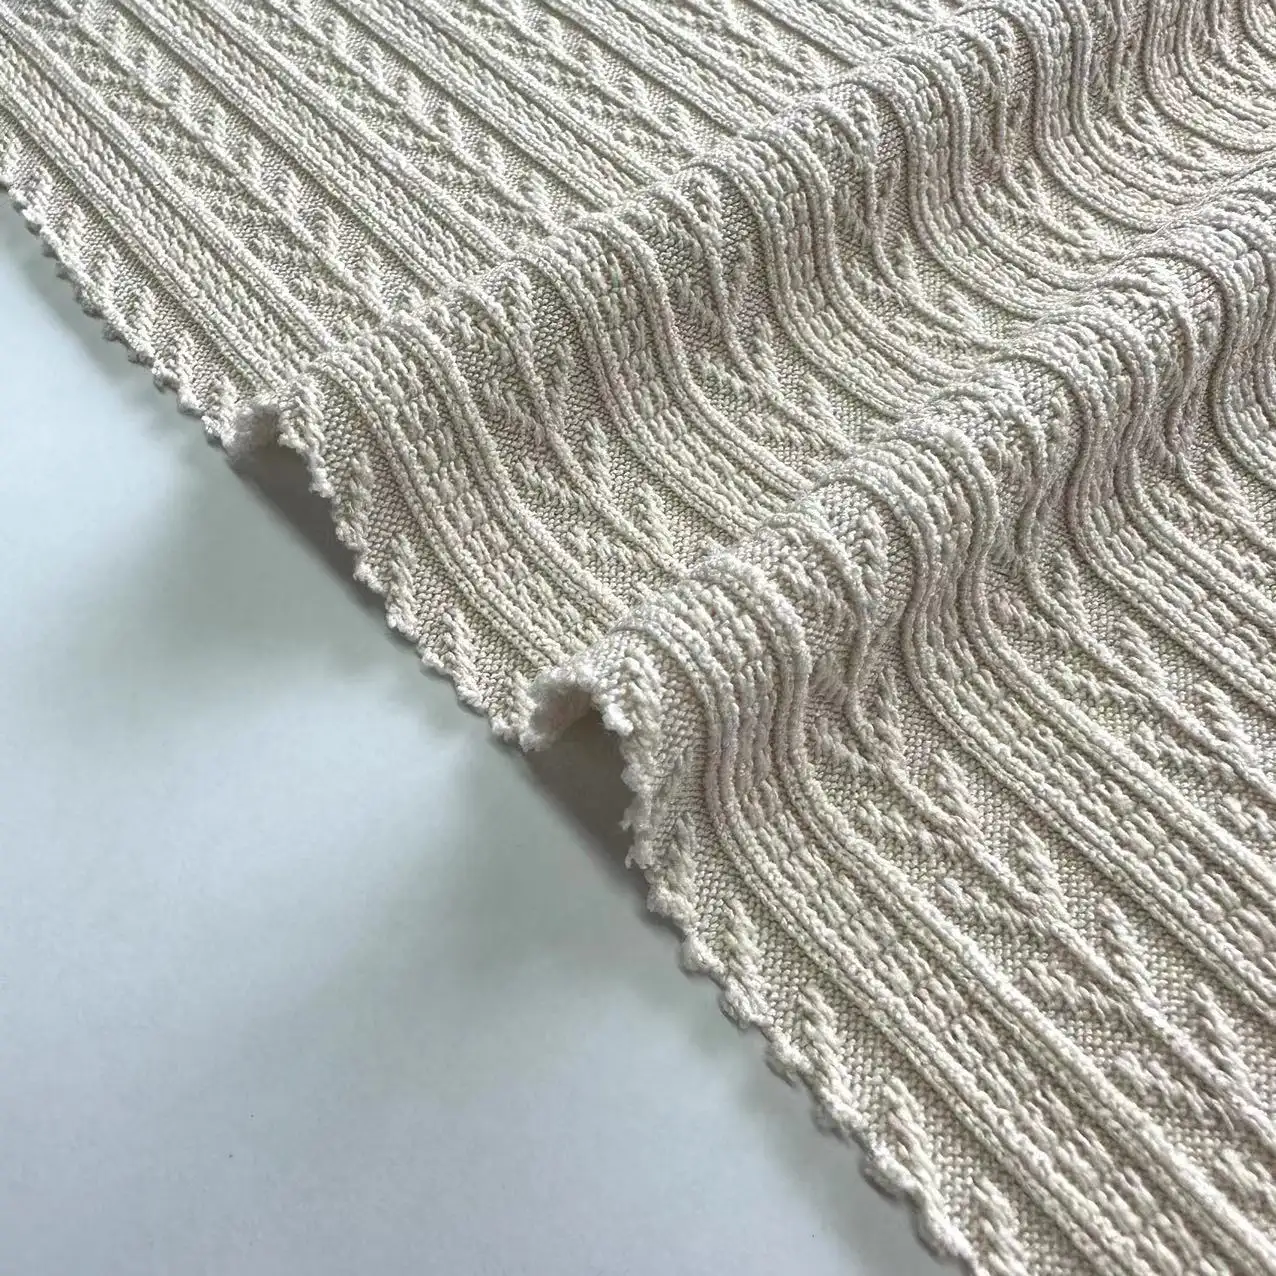 kleidungsstück neues design gestrickter stoff 95% polyester 5% elasthan 3D jacquard stoff für pullover und kleidung